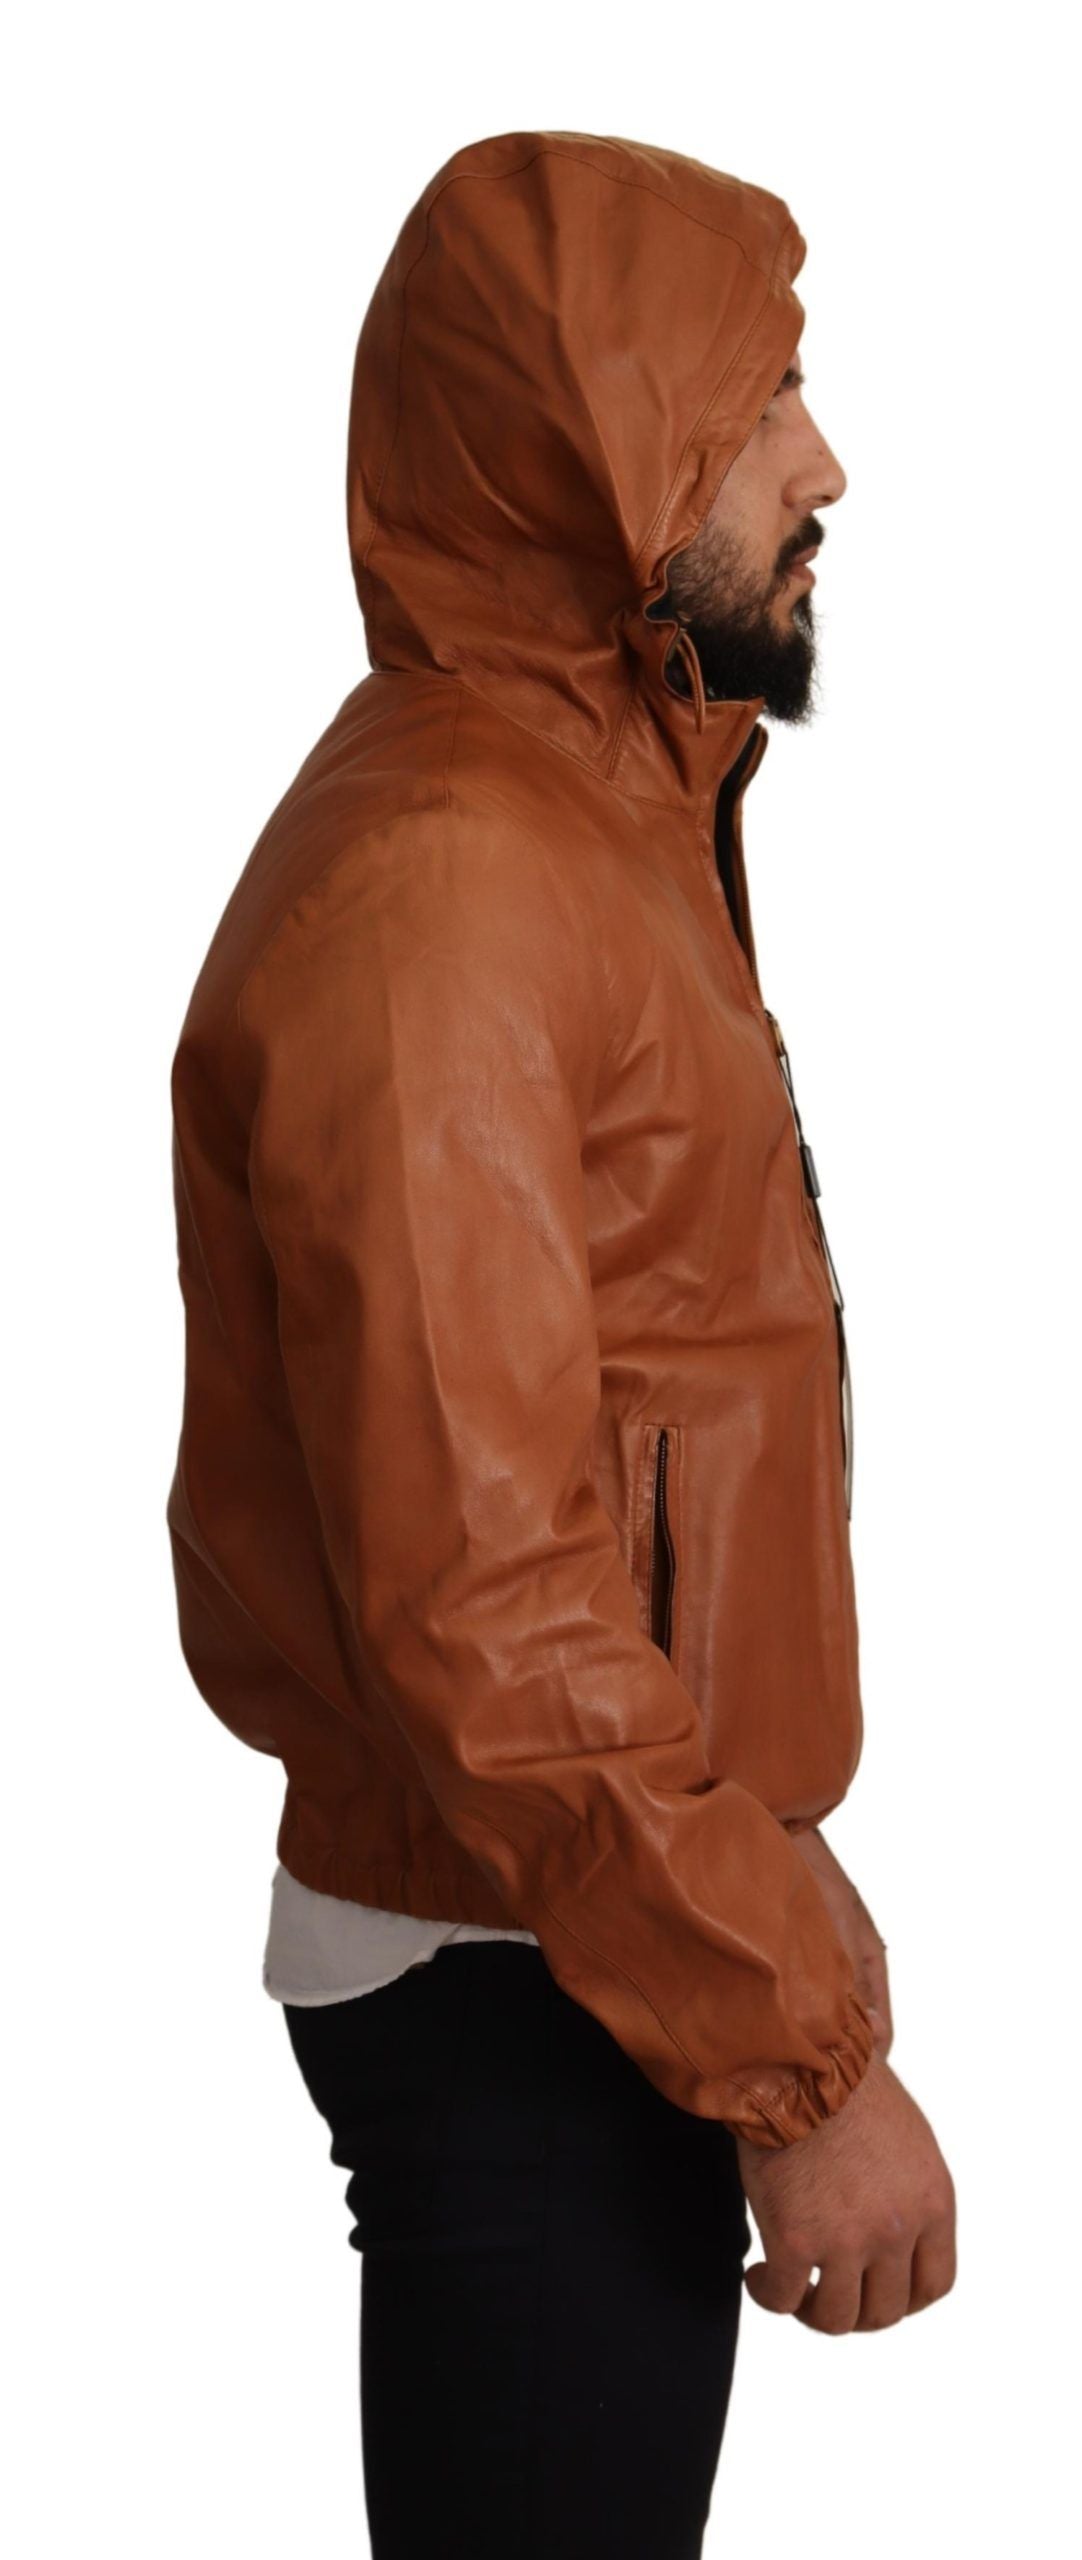 Elegant Brown Leather Bomber Jacket